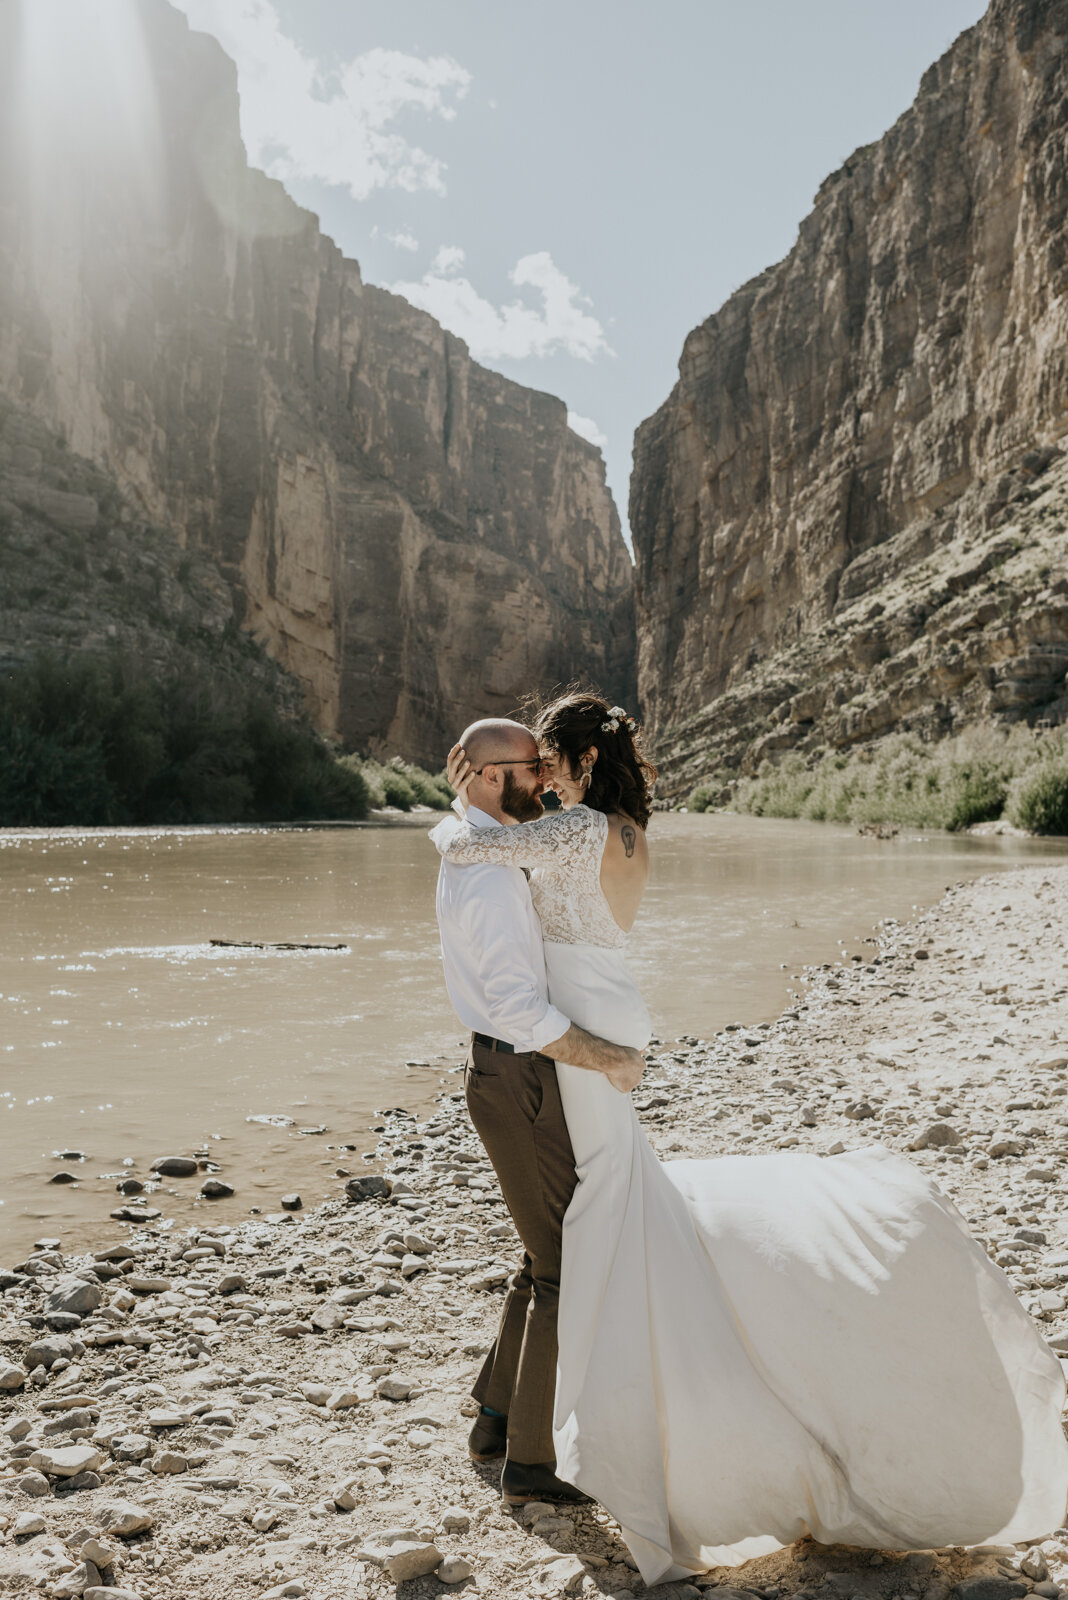  Big Bed National Park, Santa Elena Canyon Wedding Photography